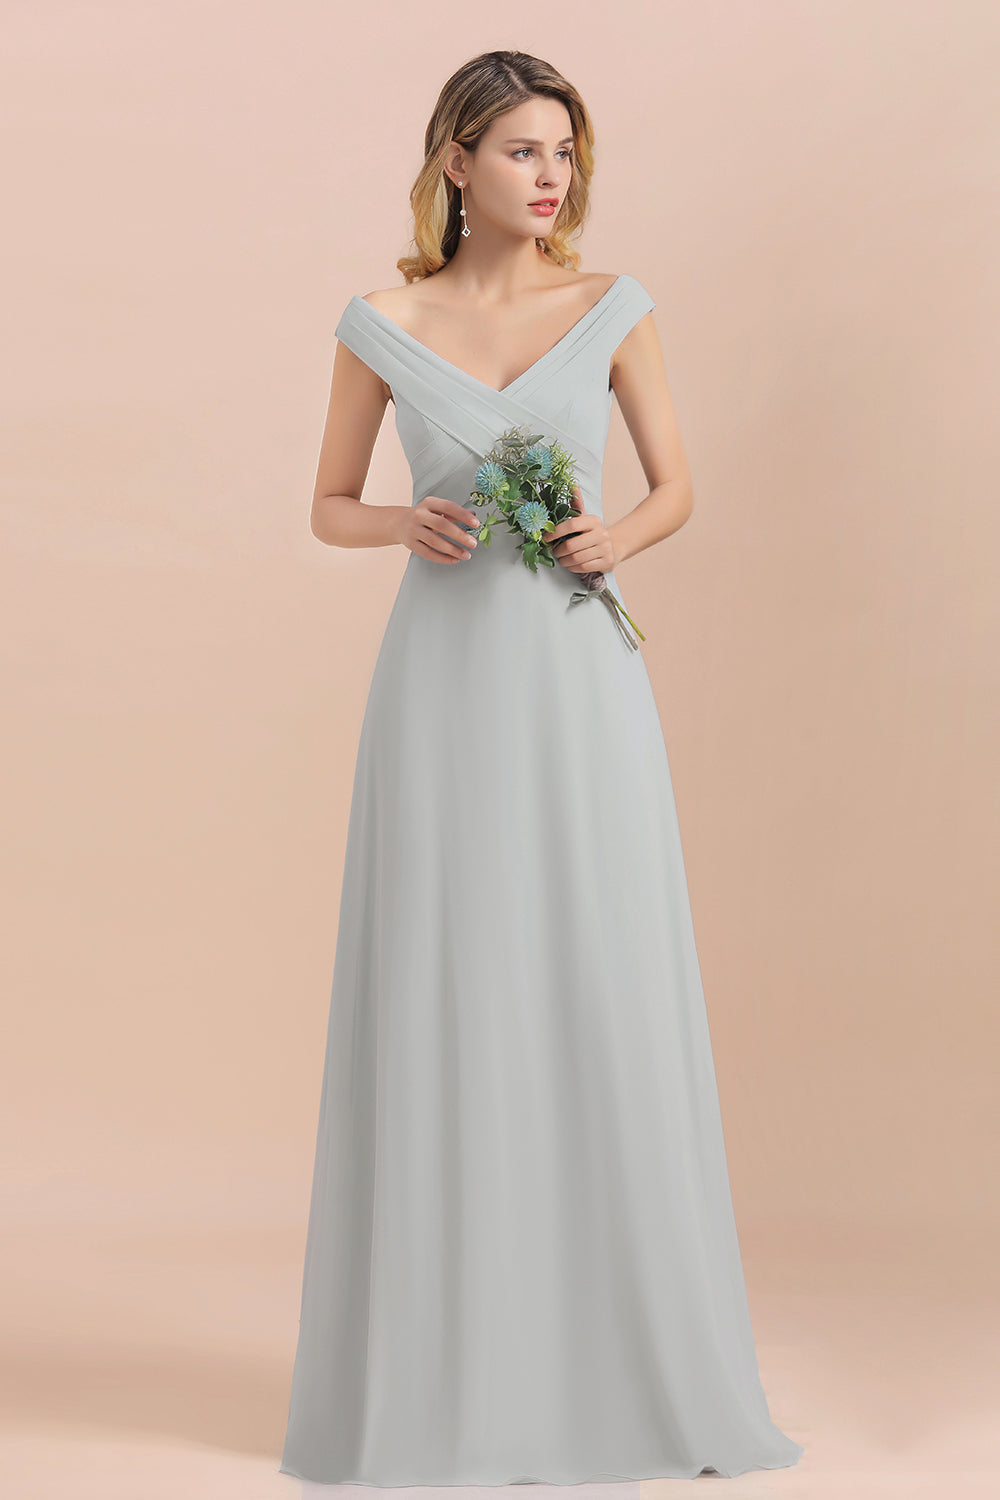 A-line Off-the-Shoulder Chiffon Bridesmaid Dress Long Evening Dress-BIZTUNNEL